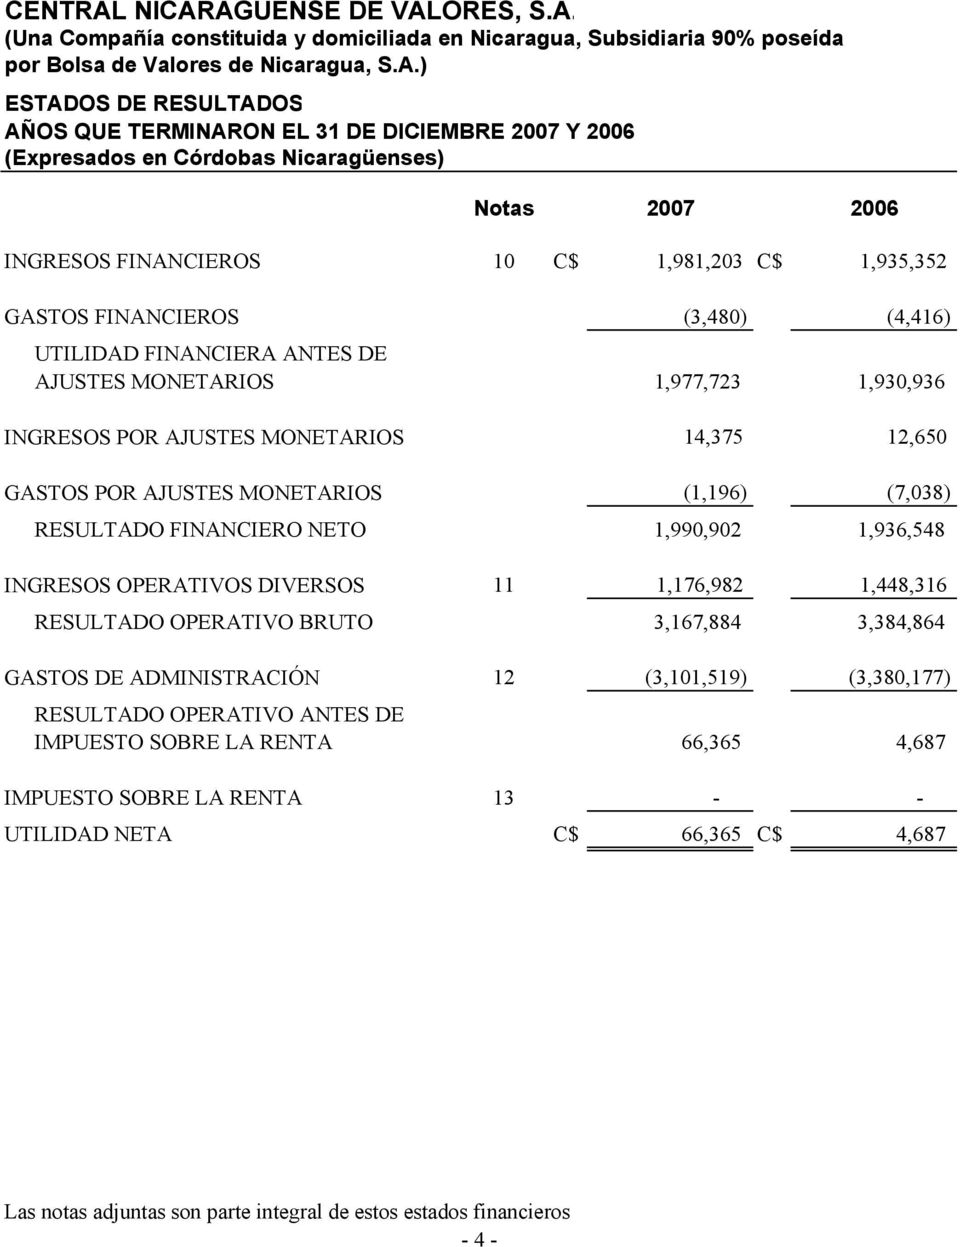 DICIEMBRE 2007 Y 2006 (Expresados en Córdobas Nicaragüenses) Notas 2007 2006 INGRESOS FINANCIEROS 10 C$ 1,981,203 C$ 1,935,352 GASTOS FINANCIEROS (3,480) (4,416) UTILIDAD FINANCIERA ANTES DE AJUSTES